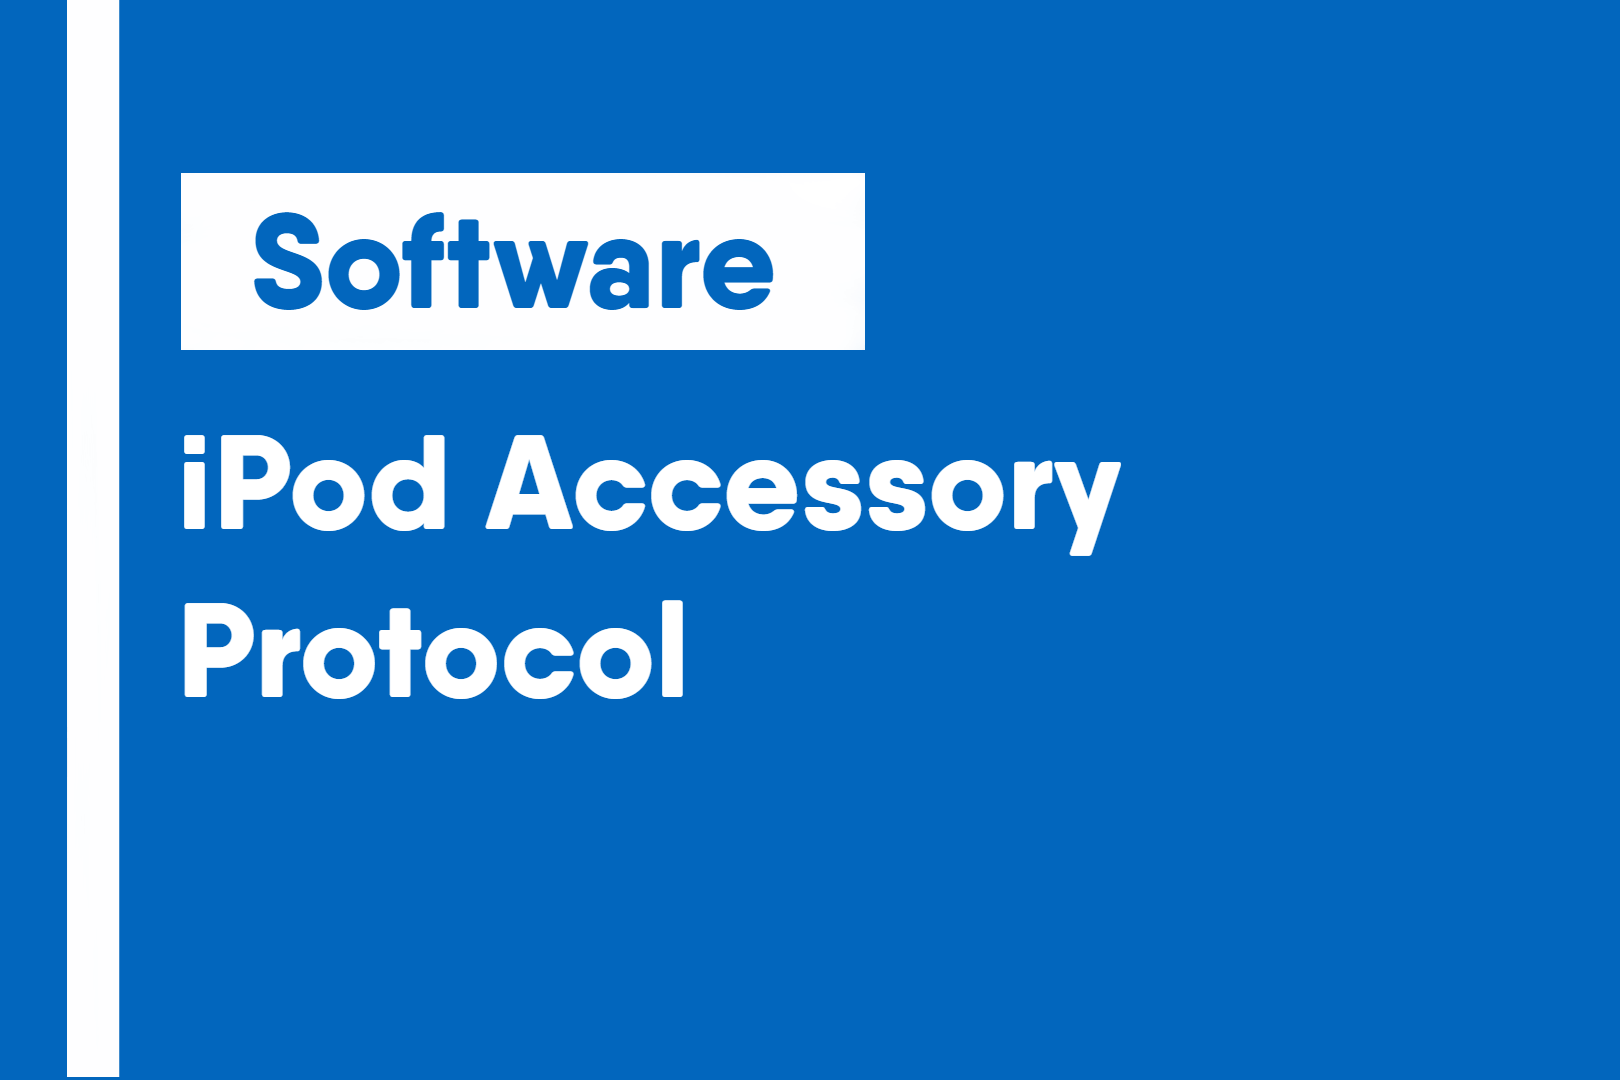 iPod Accessory Protocol